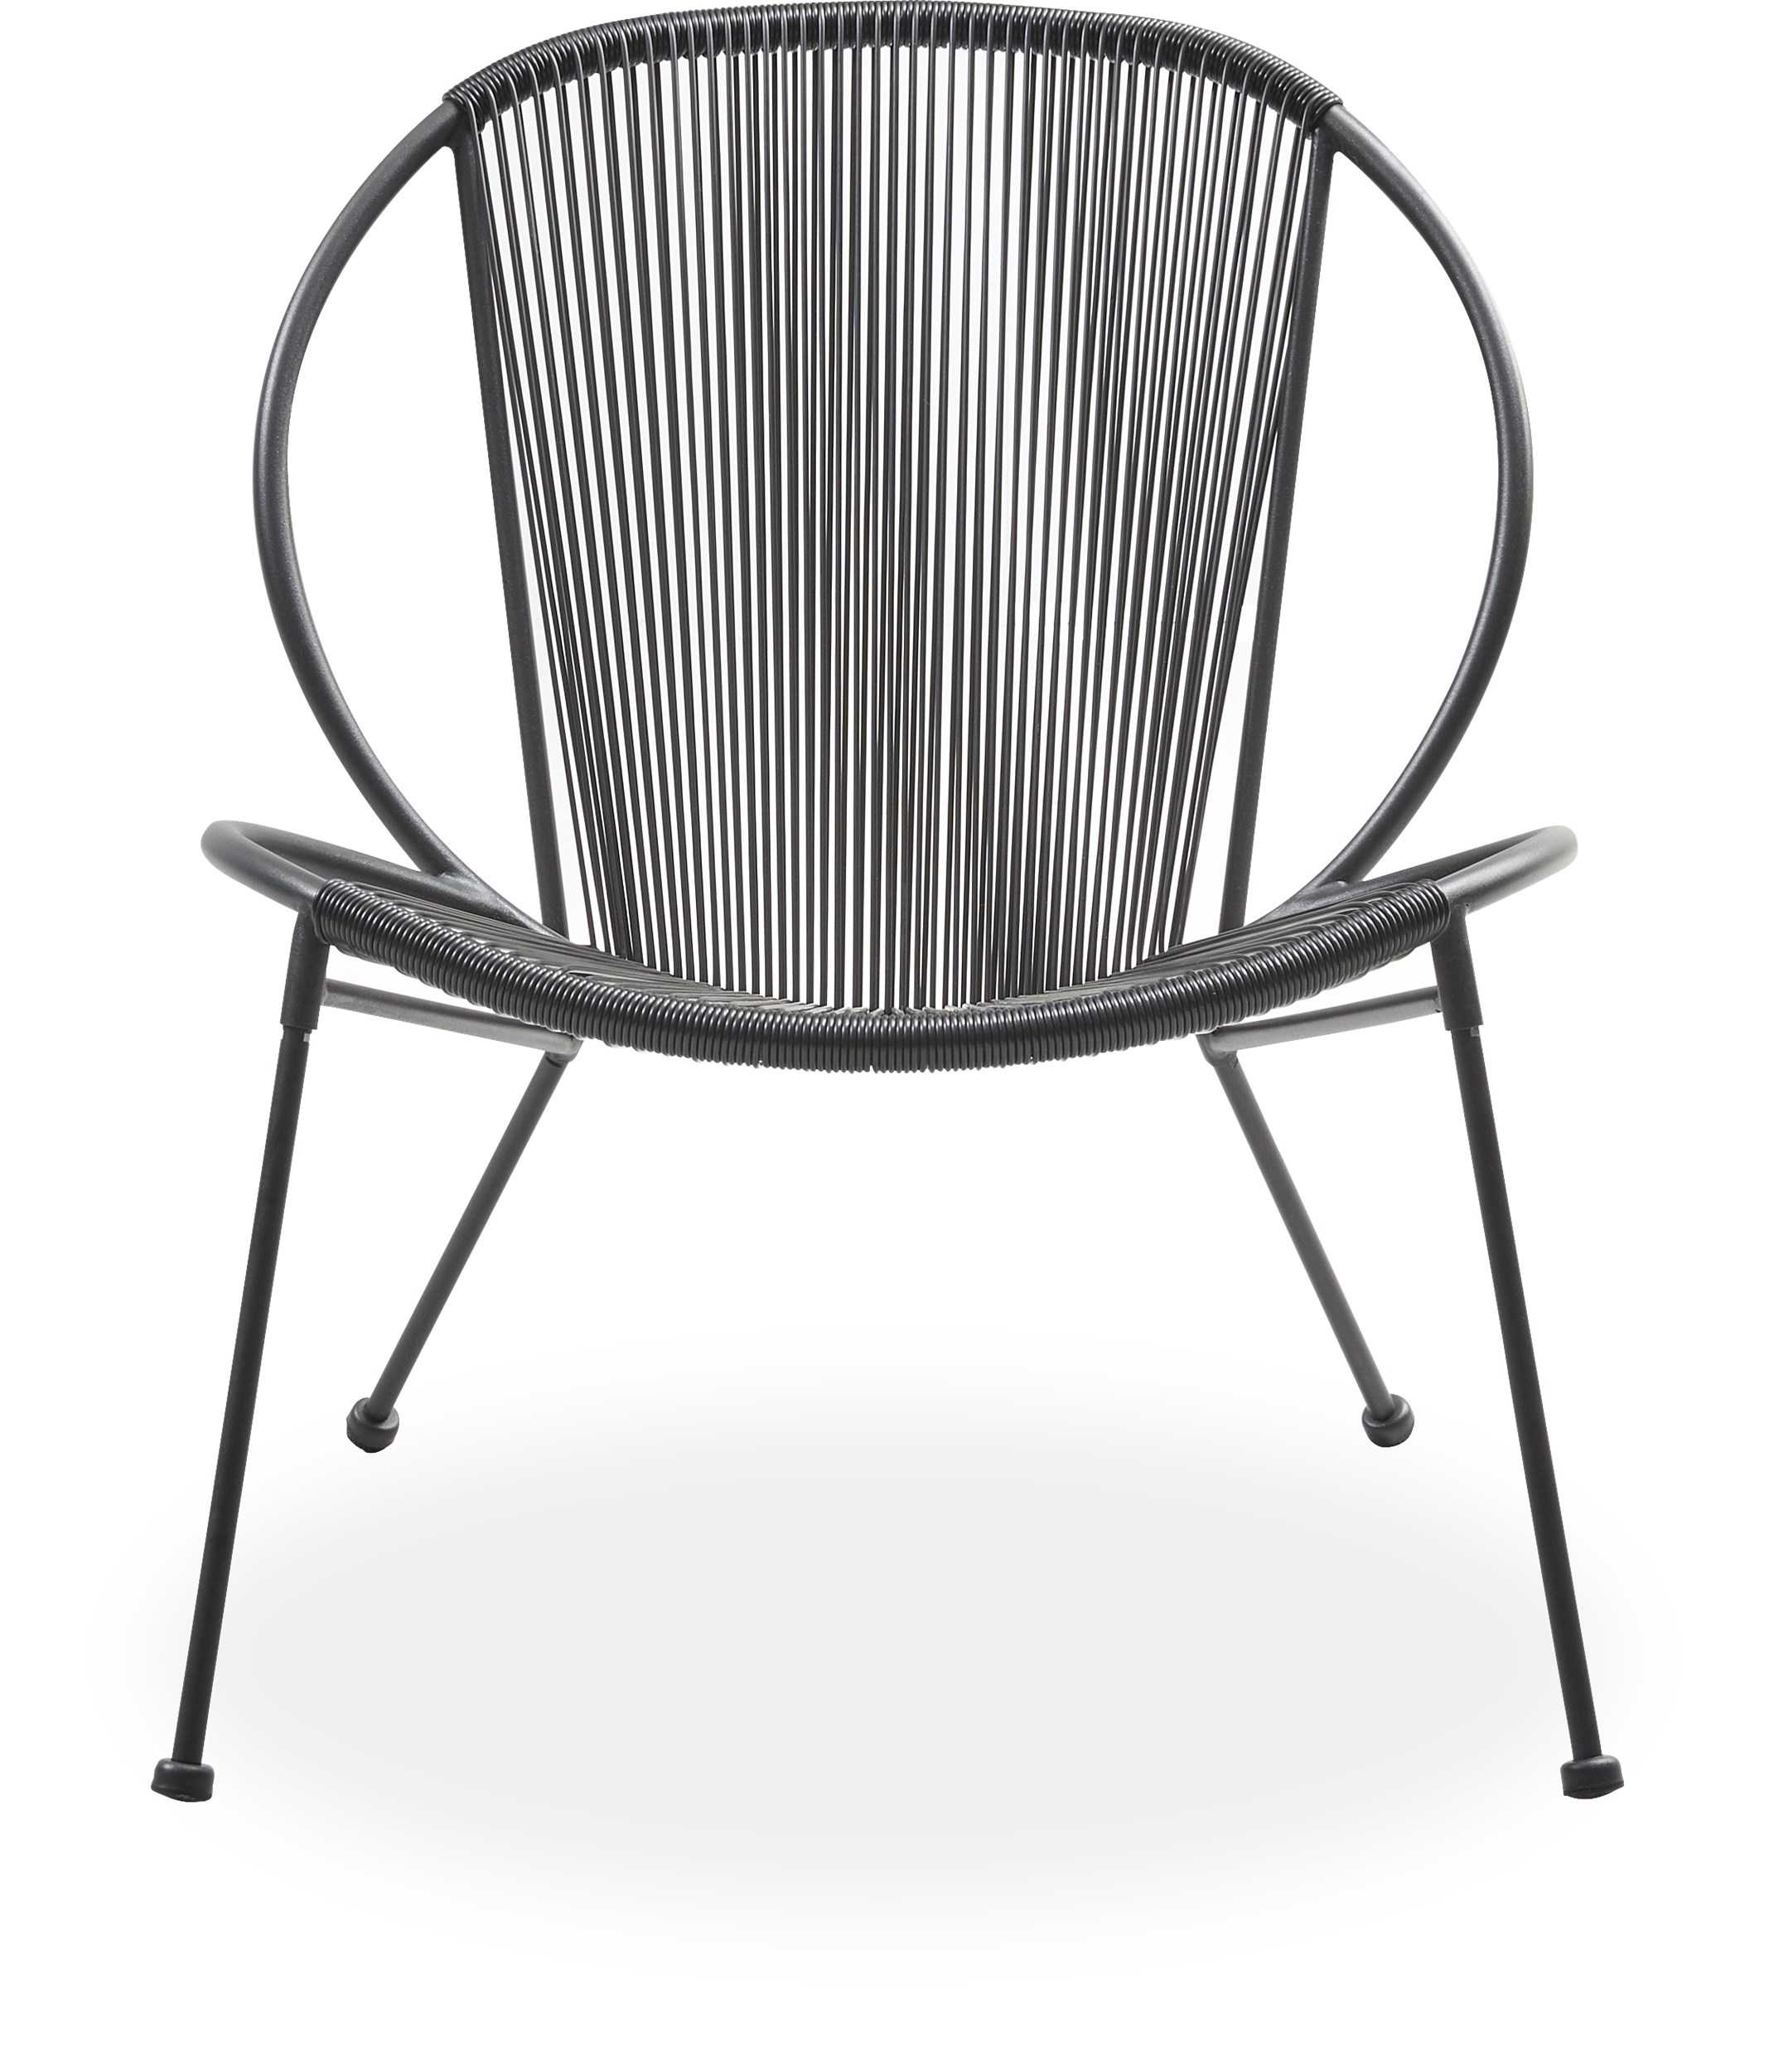 Milana Loungehavestol - Sæde/ryg i sort plastik og stel i sort pulverlakeret metal